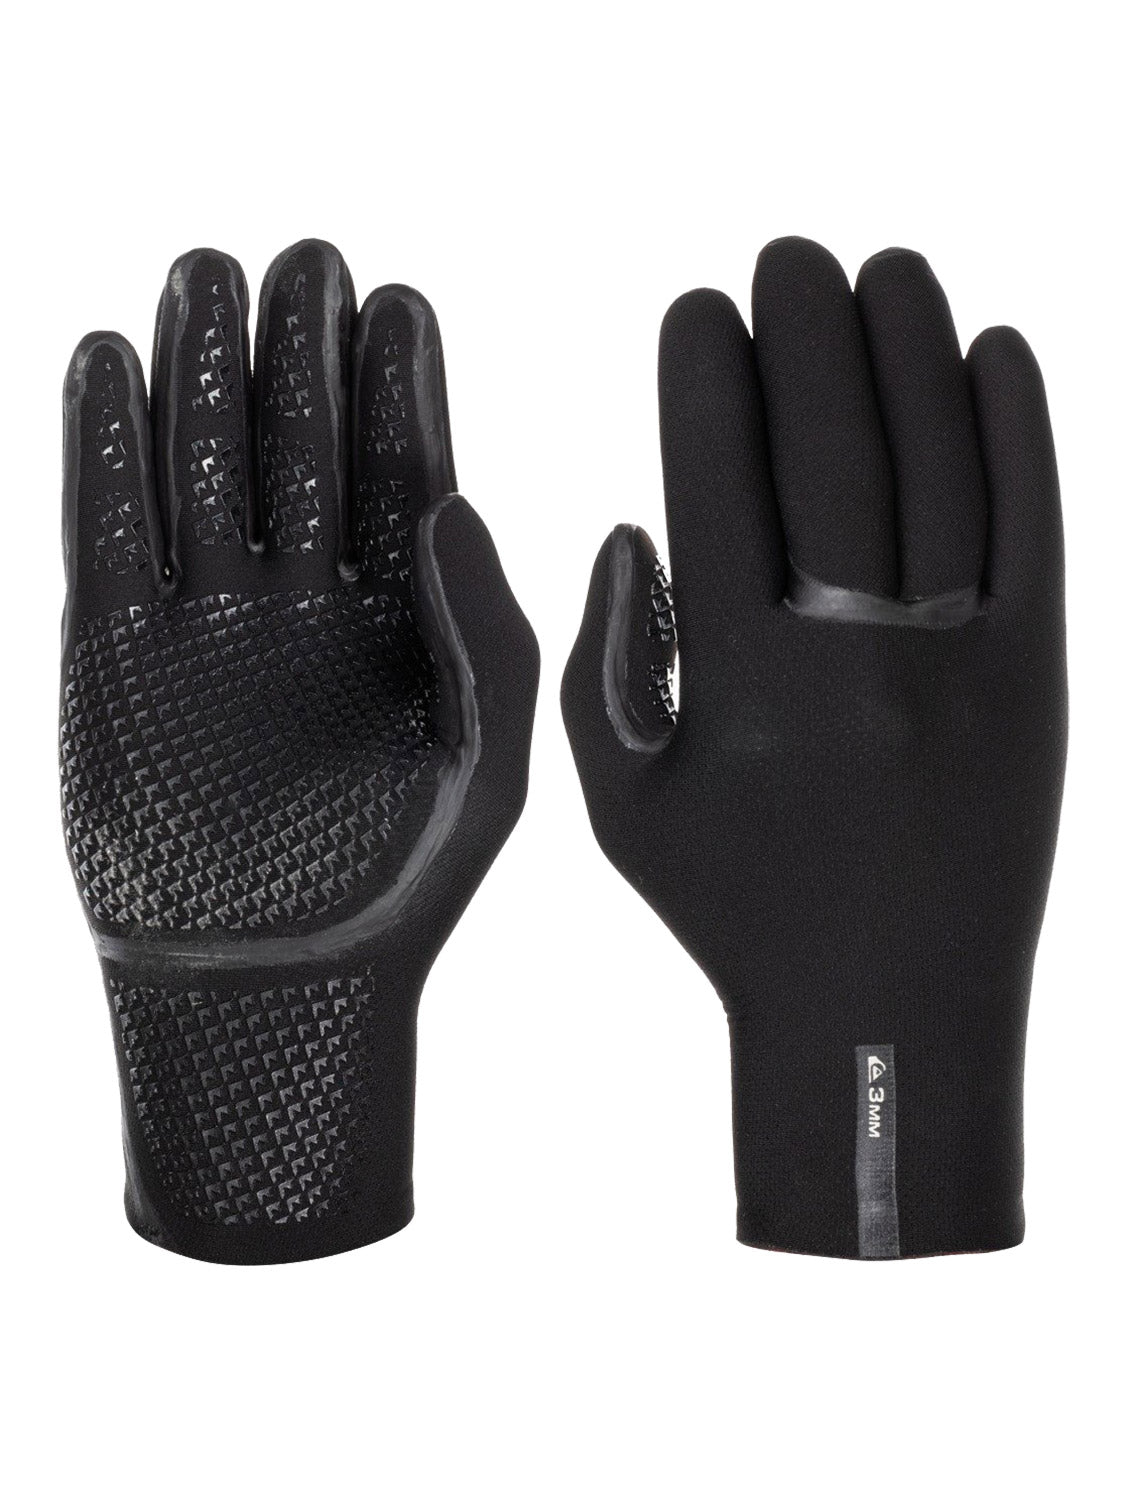 Quiksilver Men's 3mm Marathon Sessions Wetsuit Gloves